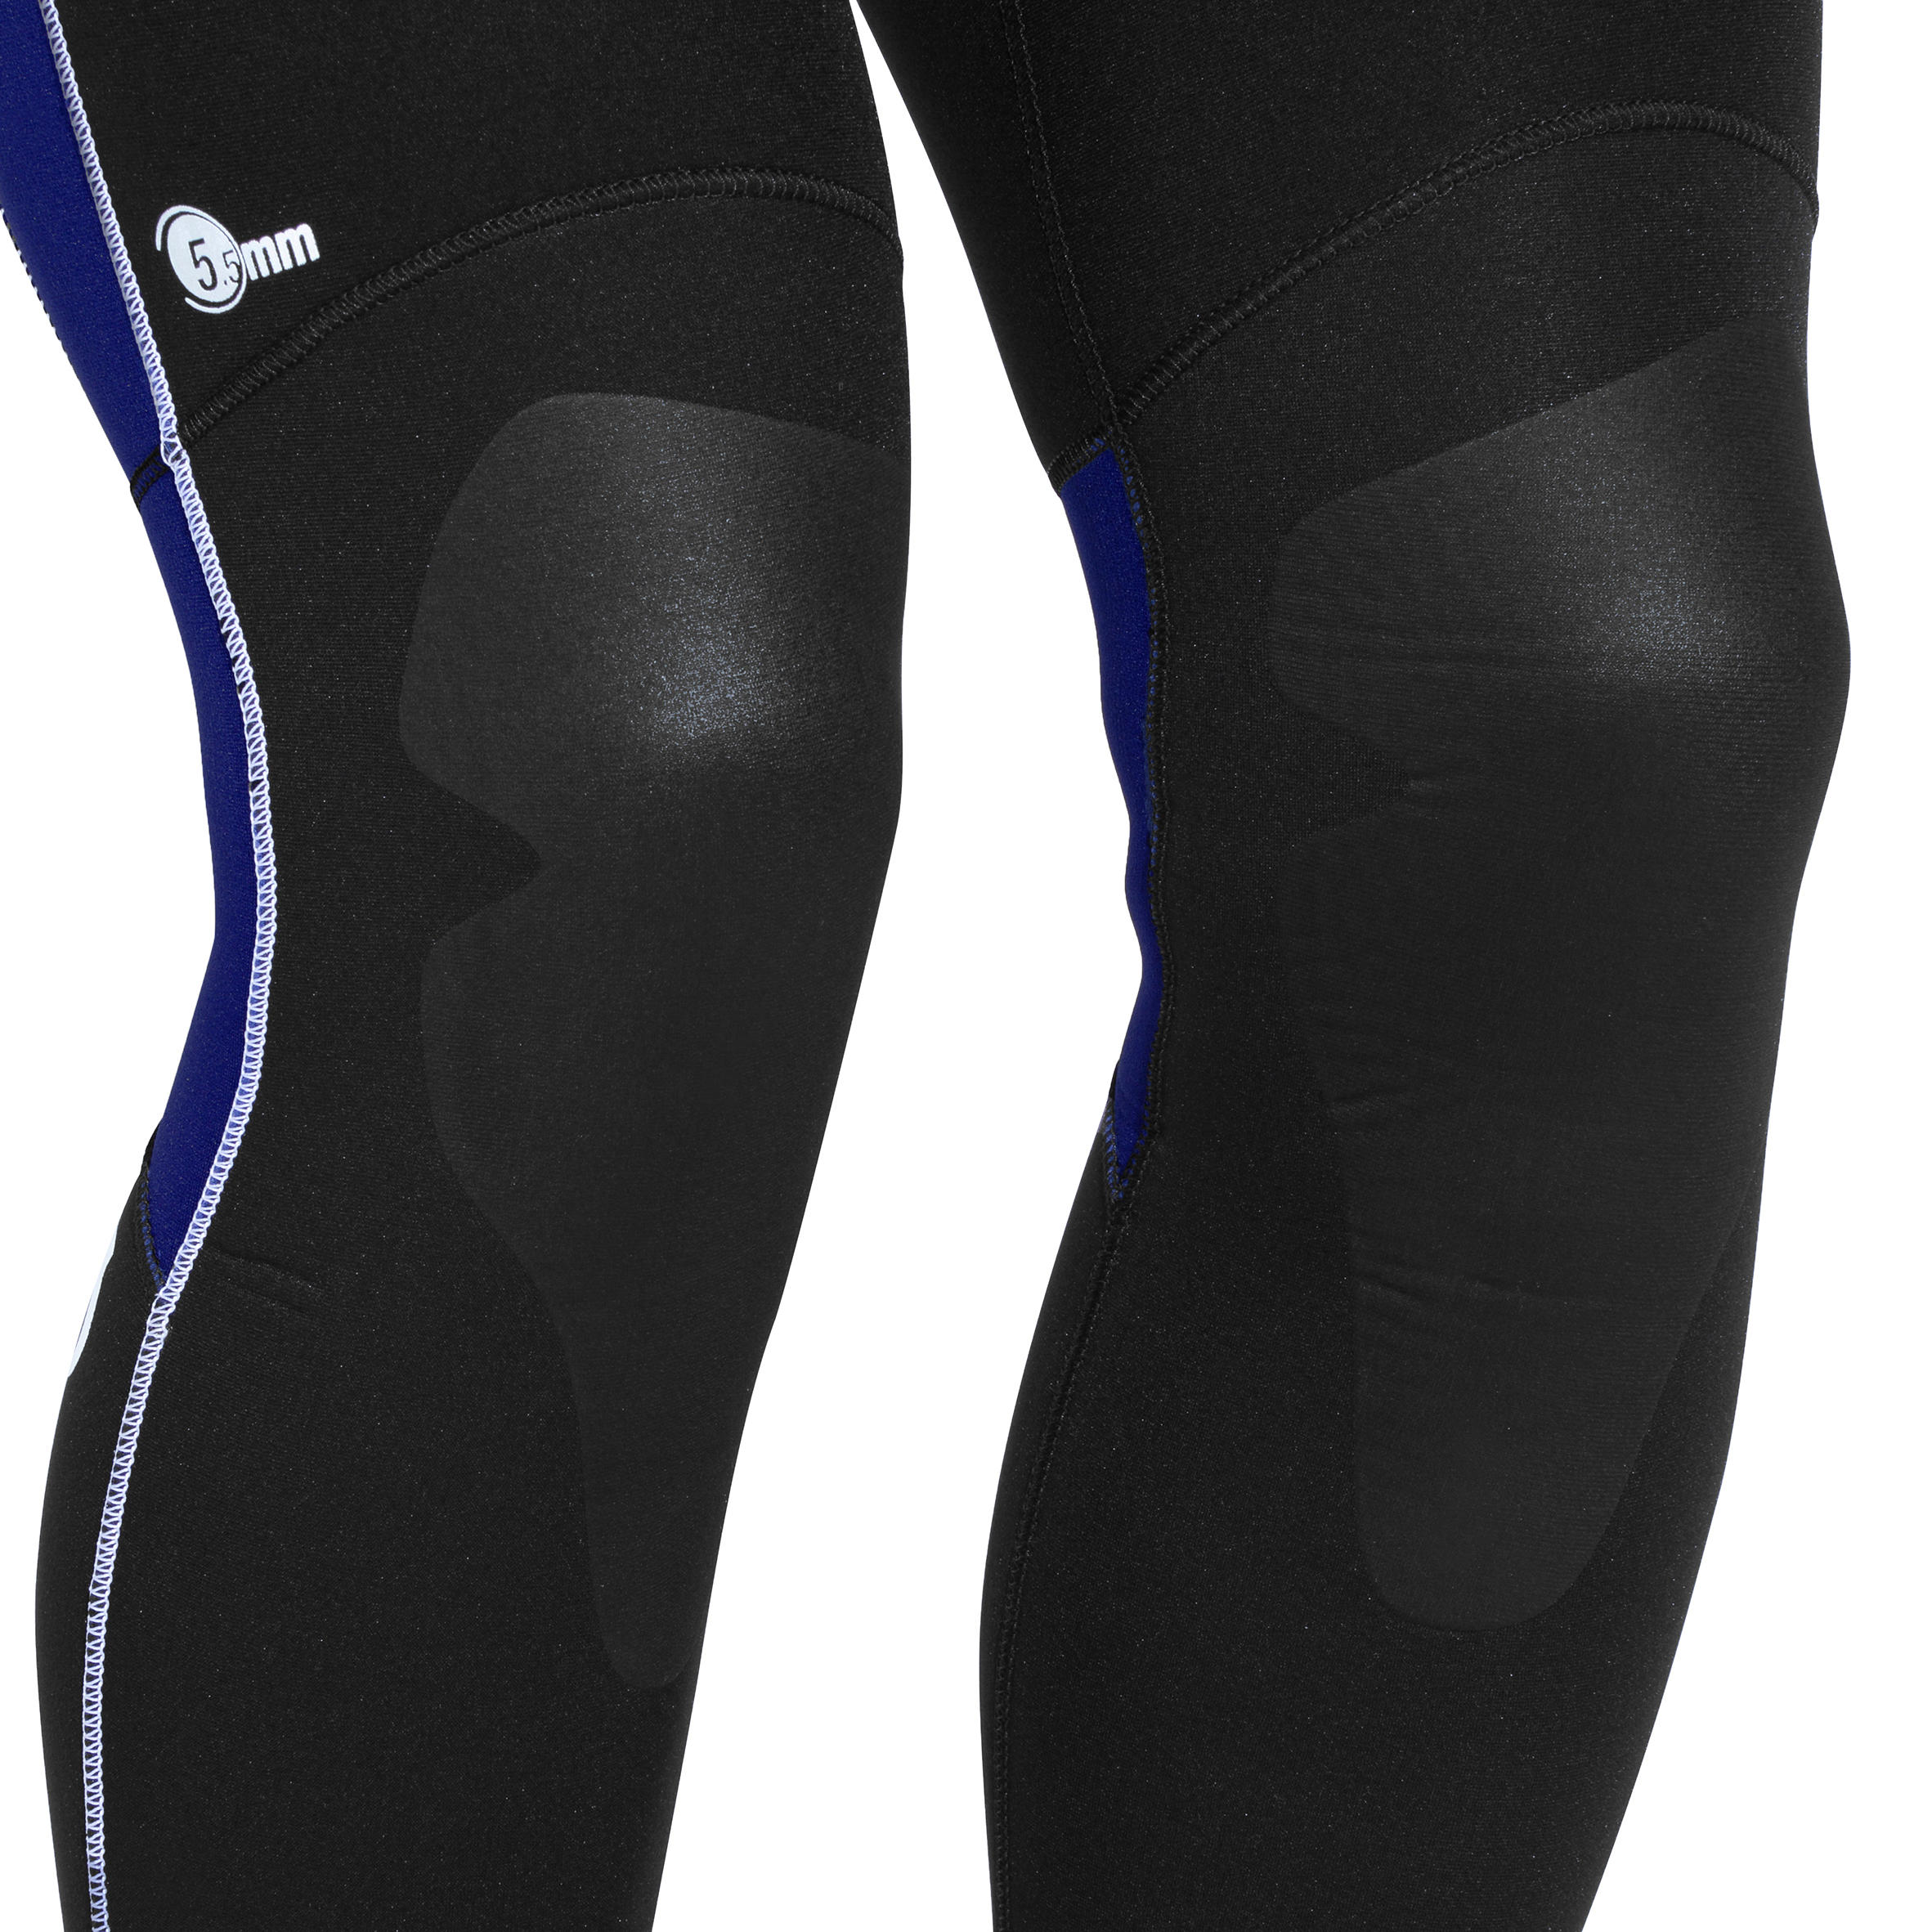 Men's diving sleeveless wetsuit 5.5 mm neoprene SCD black 10/14